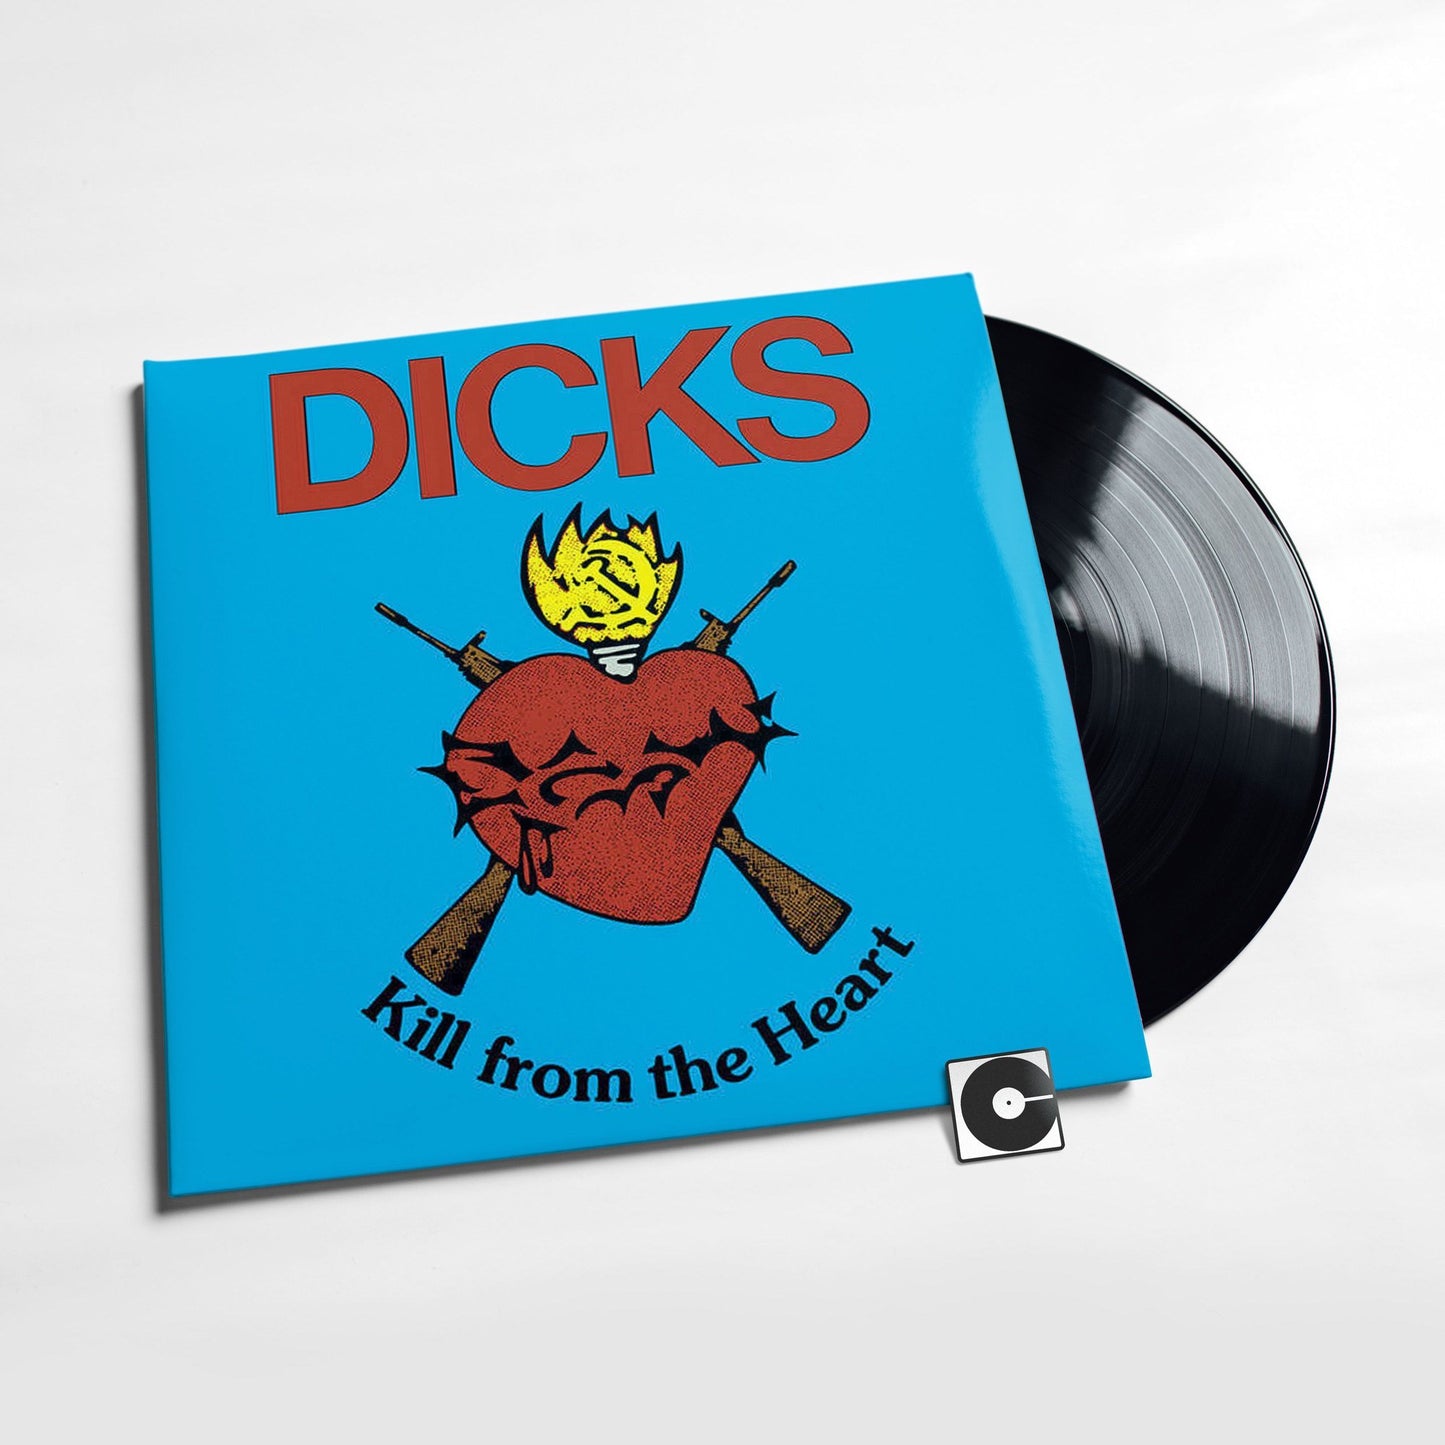 Dicks - "Kill From The Heart"